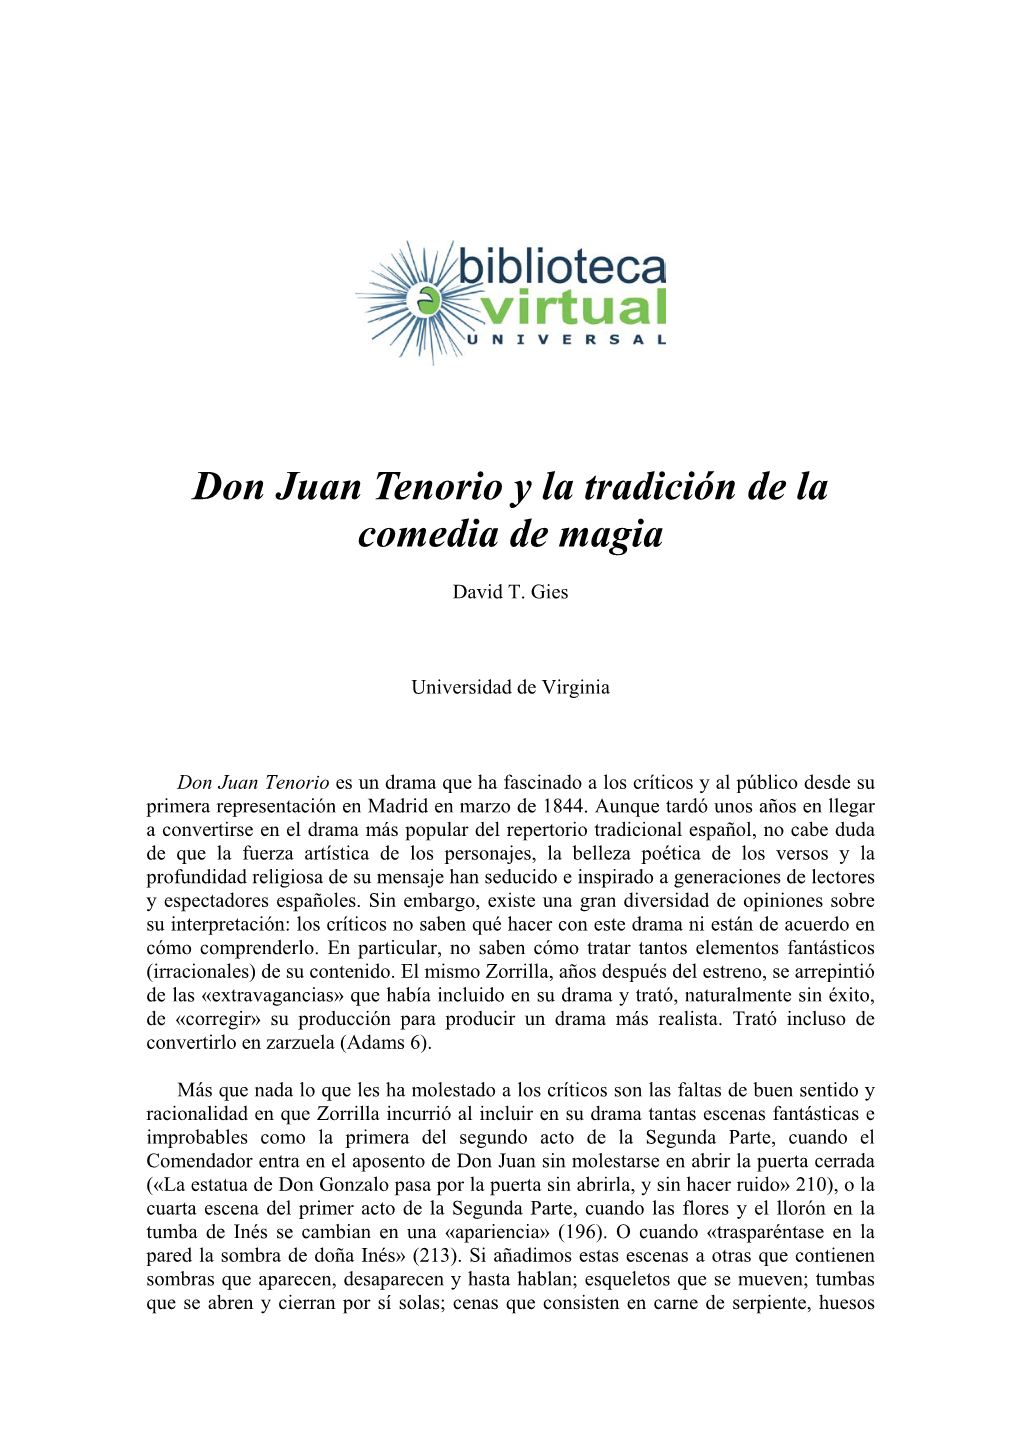 Don Juan Tenorio Y La Tradición De La Comedia De Magia